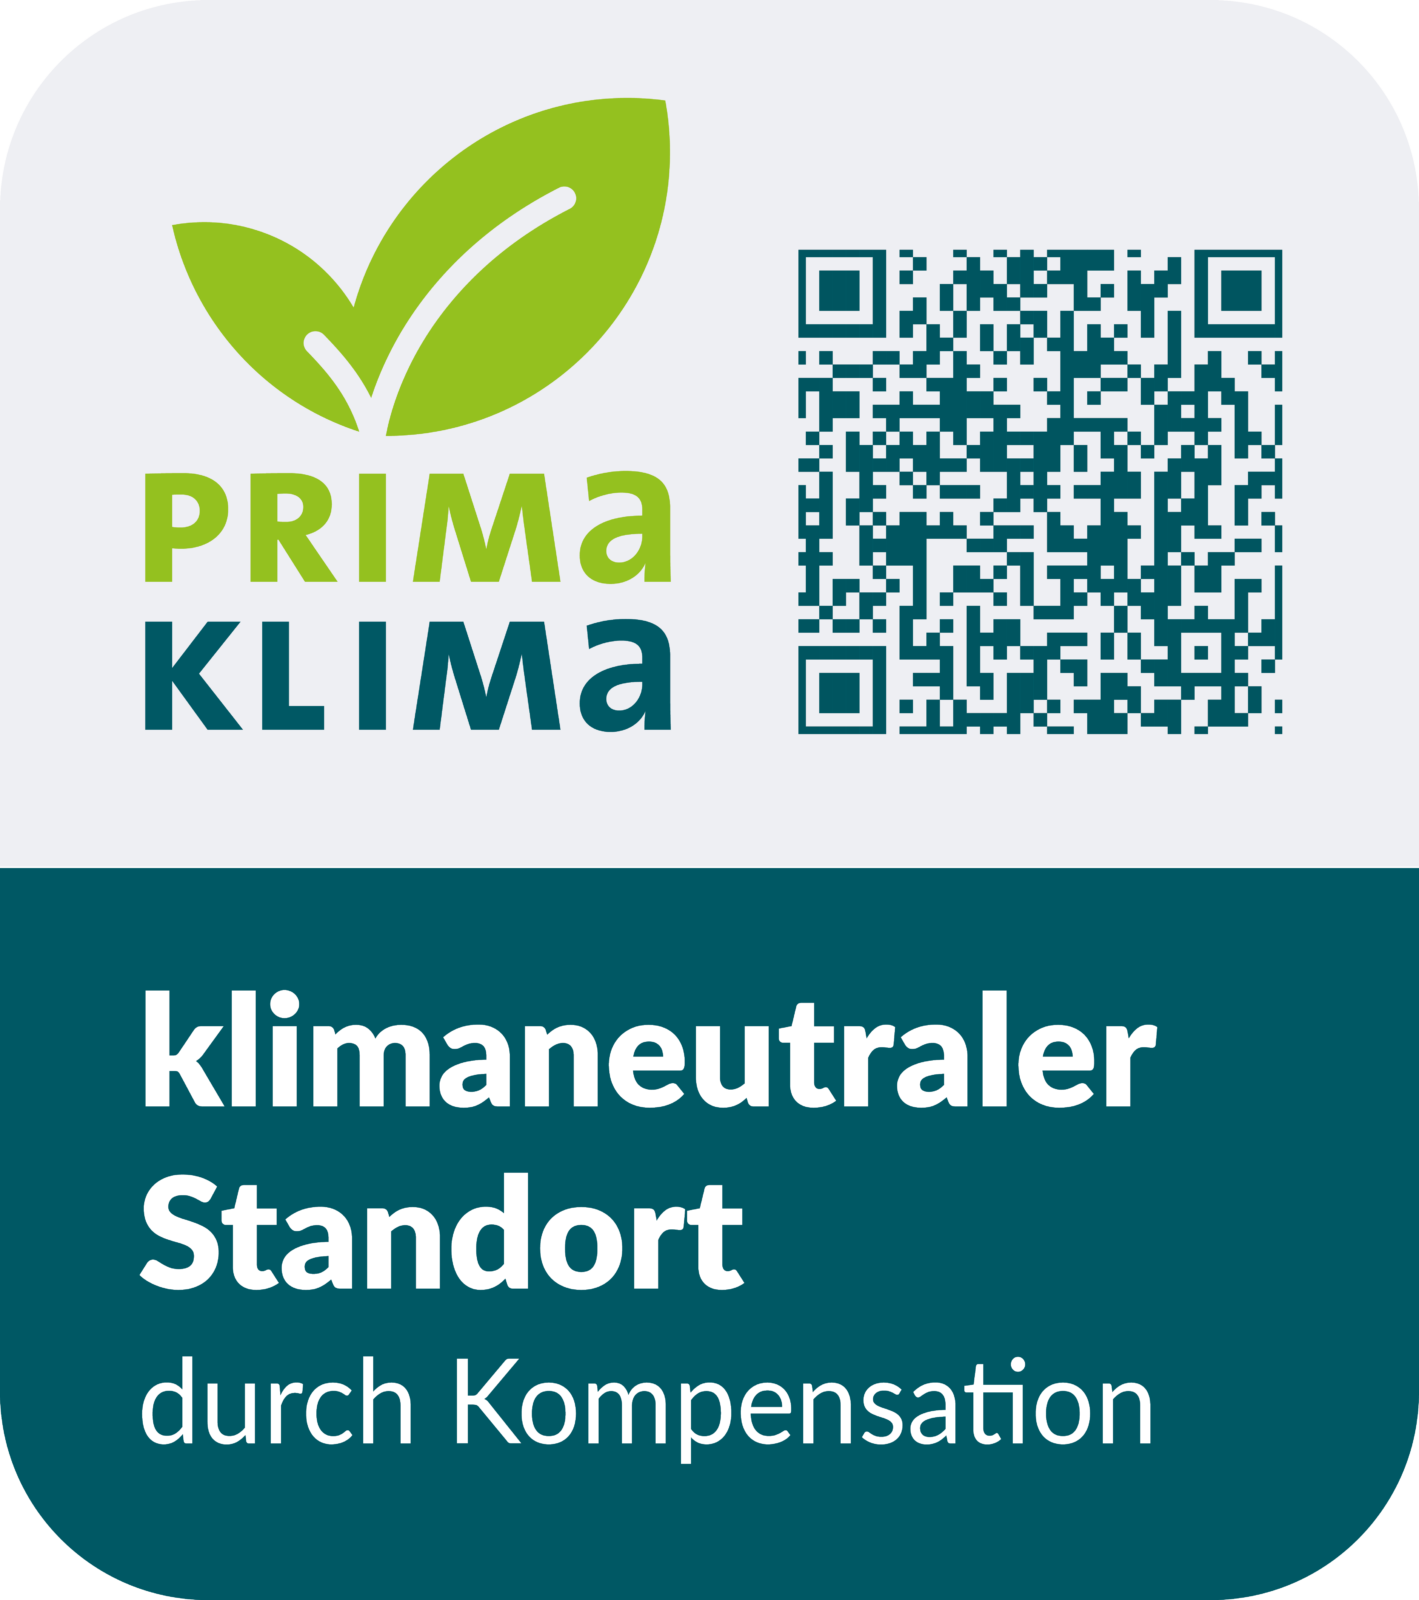 PrimaKlima-Siegel mit der Aufschrift "klimaneutraler Standort durch Kompensation"